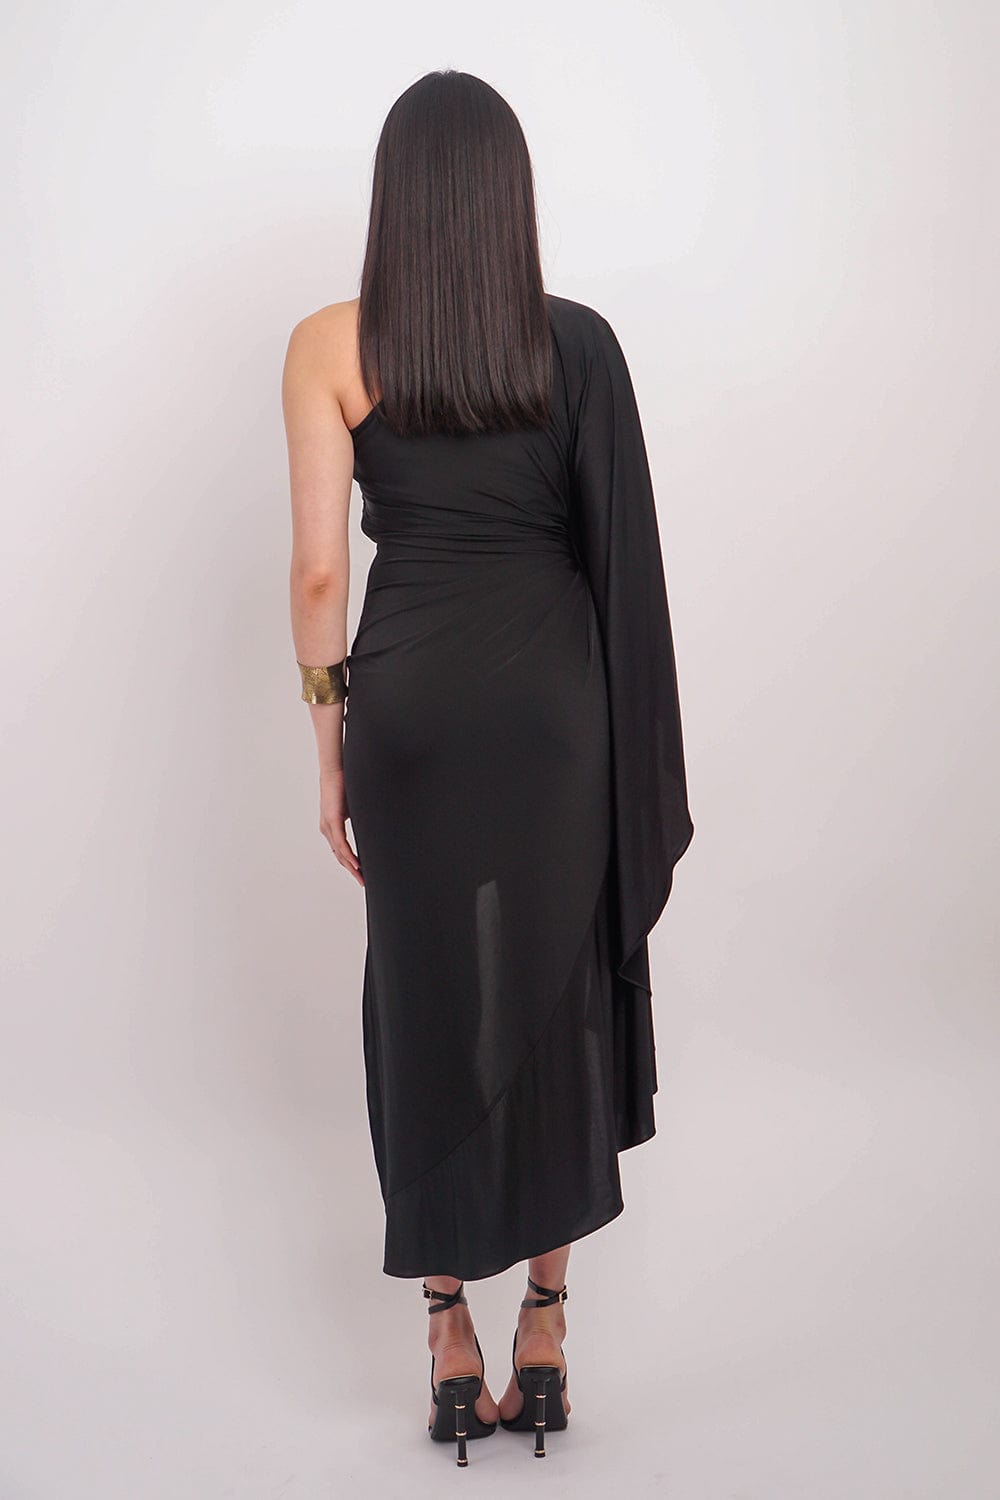 DCD DRESSES Black One Shoulder Carolina Dress